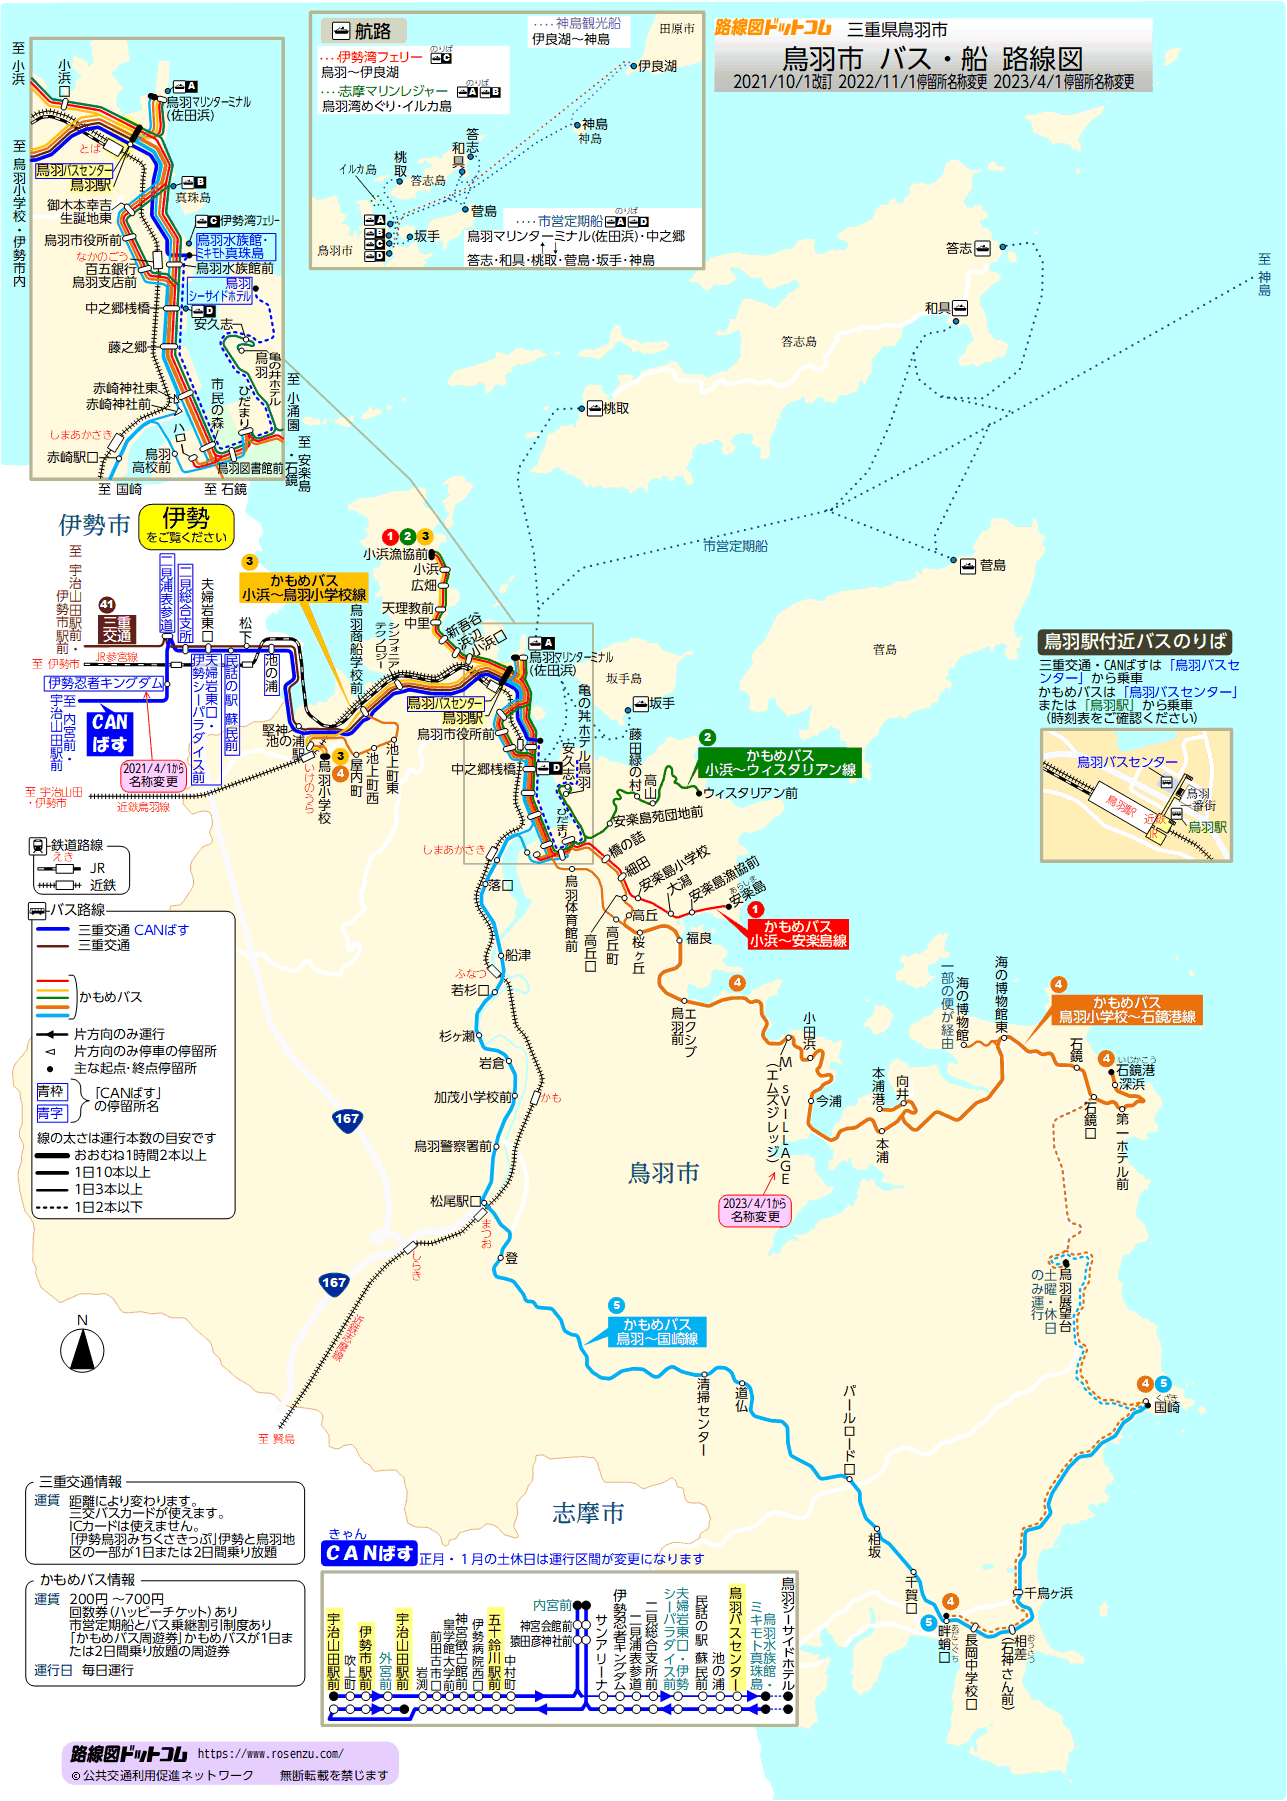 路線図ドットコム 三重県 鳥羽市 バス 船路線図